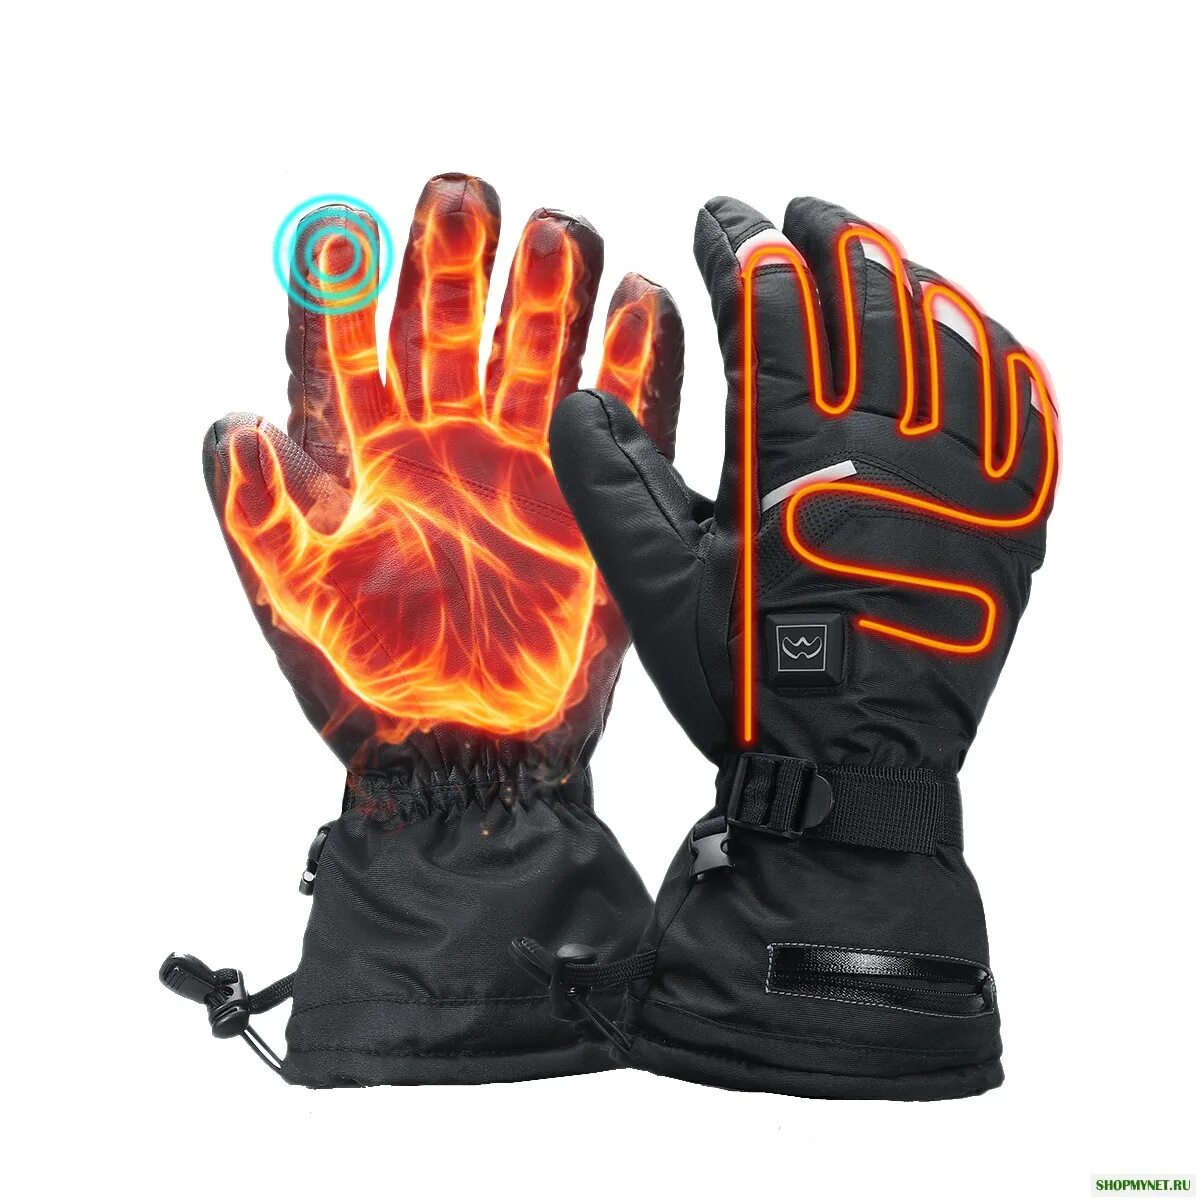 Перчатки с подогревом 30 Seven Ski Gloves. Winter Gloves перчатки с подогревом. Перчатки Blaze с подогревом. Перчатки с обогрево Lenz.